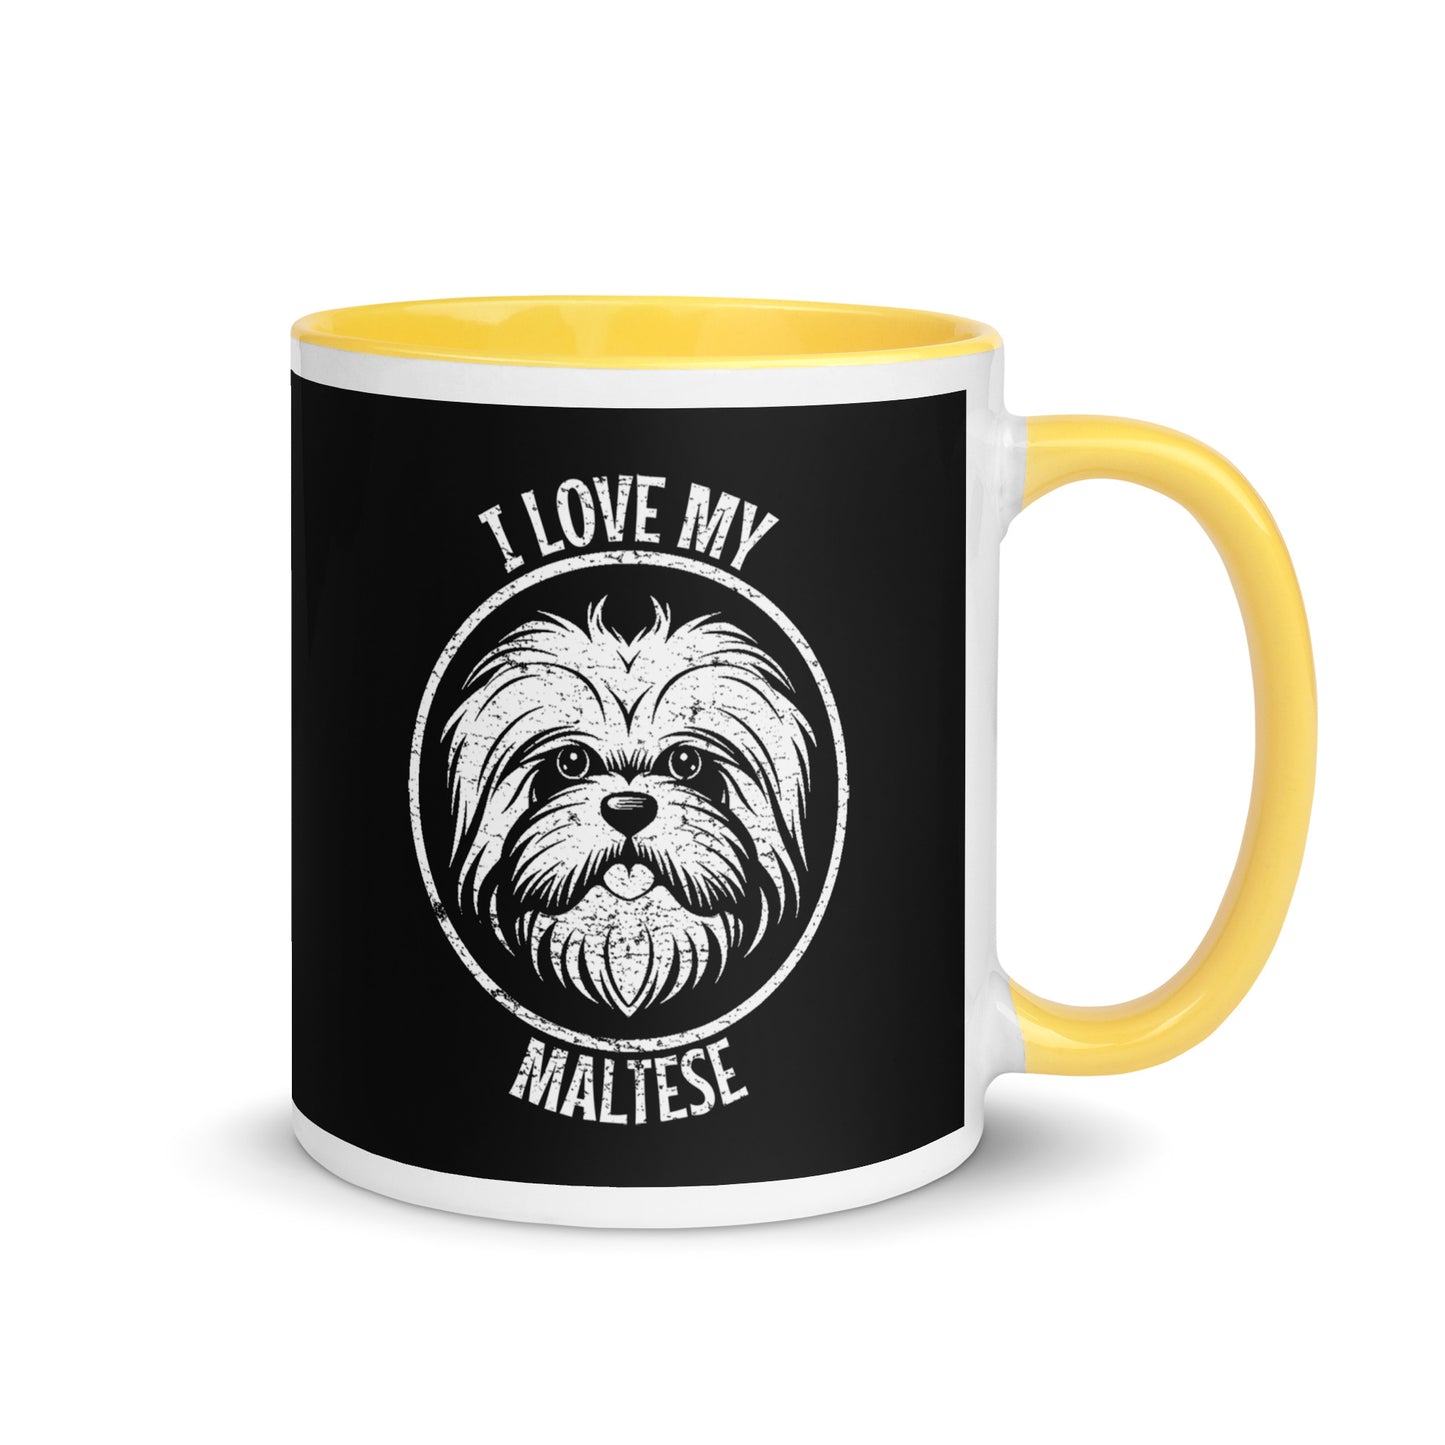 Maltese Mug, Maltese gift, gift for dog mom, custom dog gift, dog owner gift, pet memorial gift